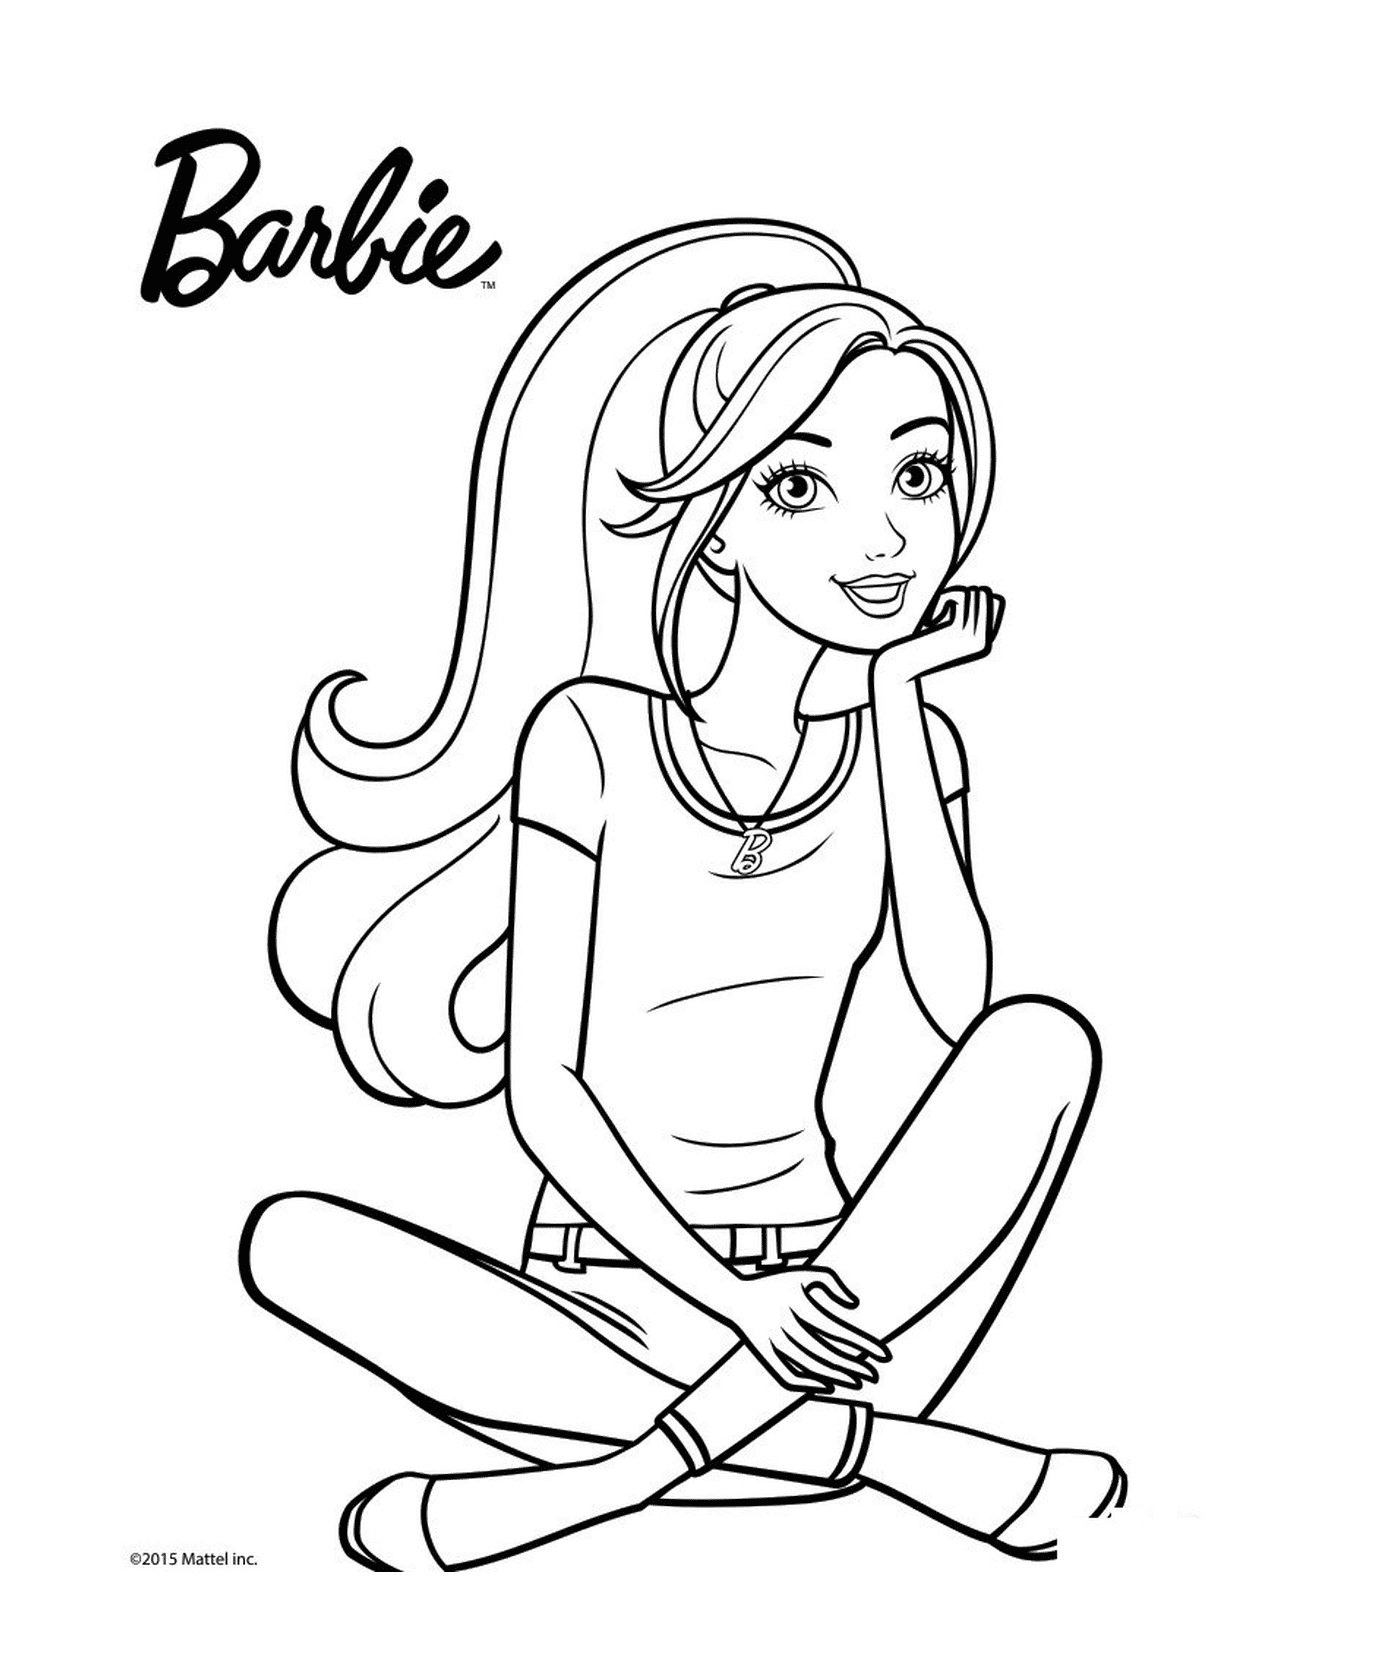  Uma boneca Barbie pensante e feliz 